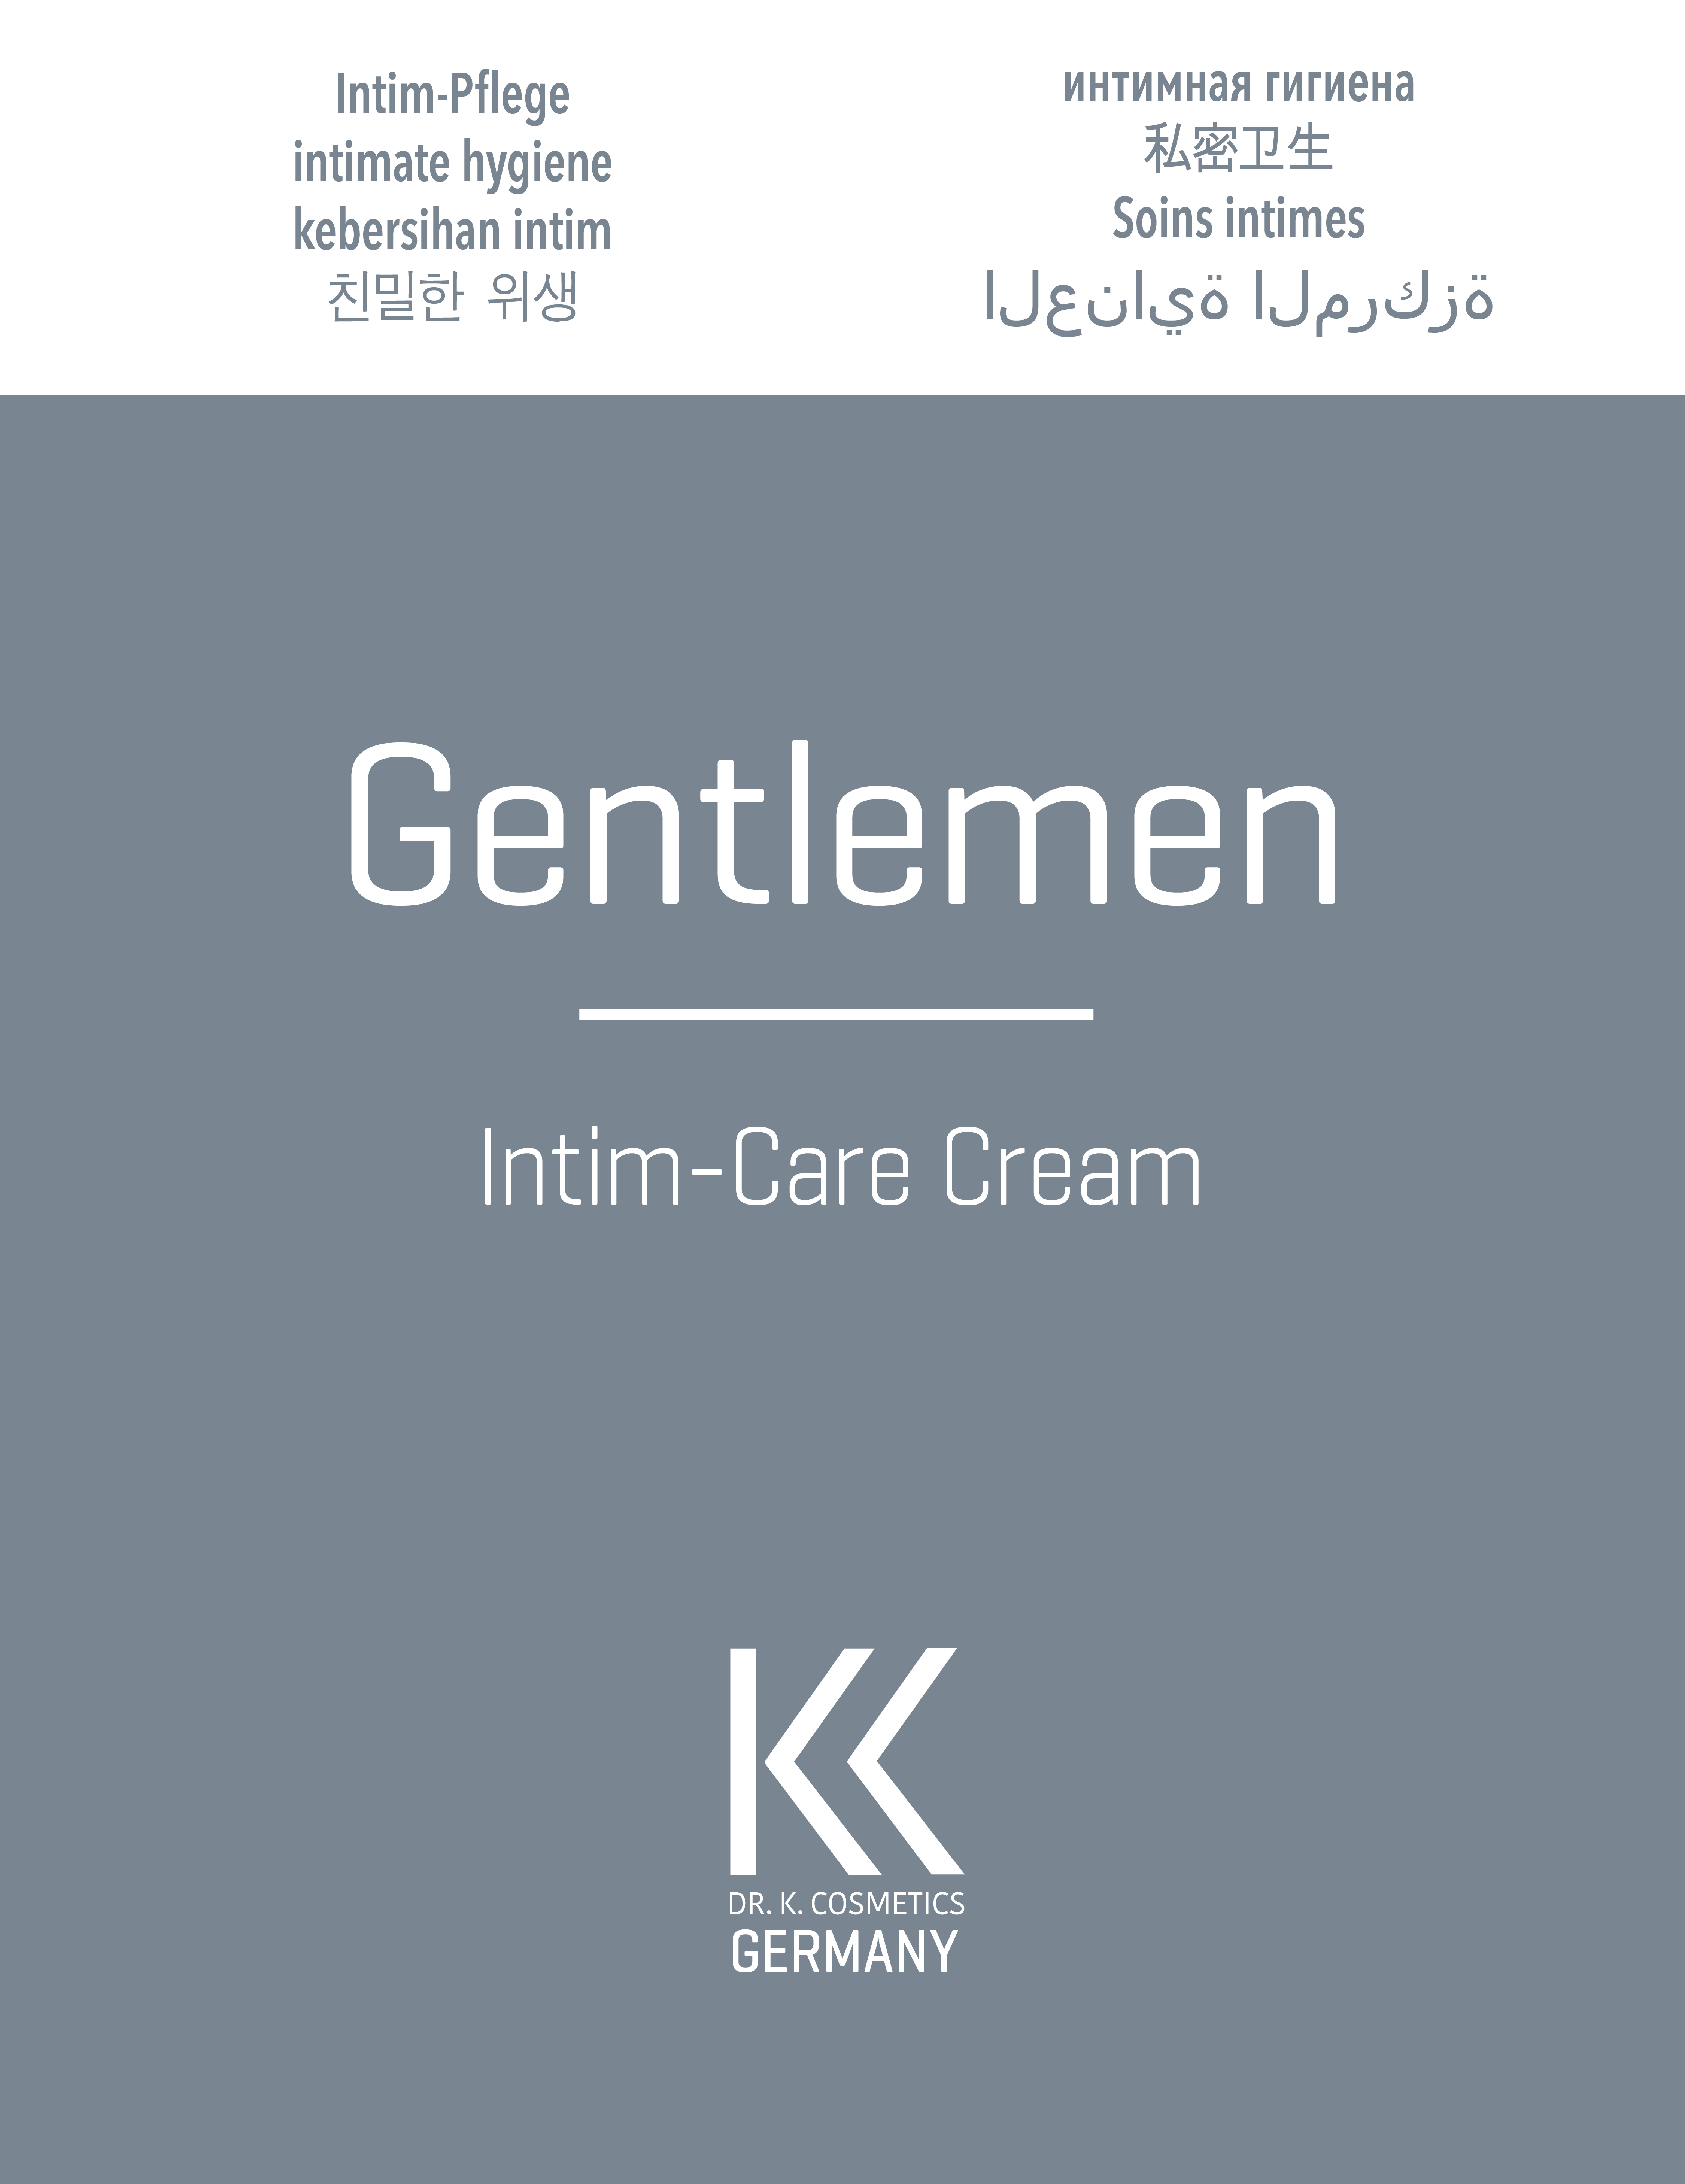 Gentlemen Intim-Care Cream